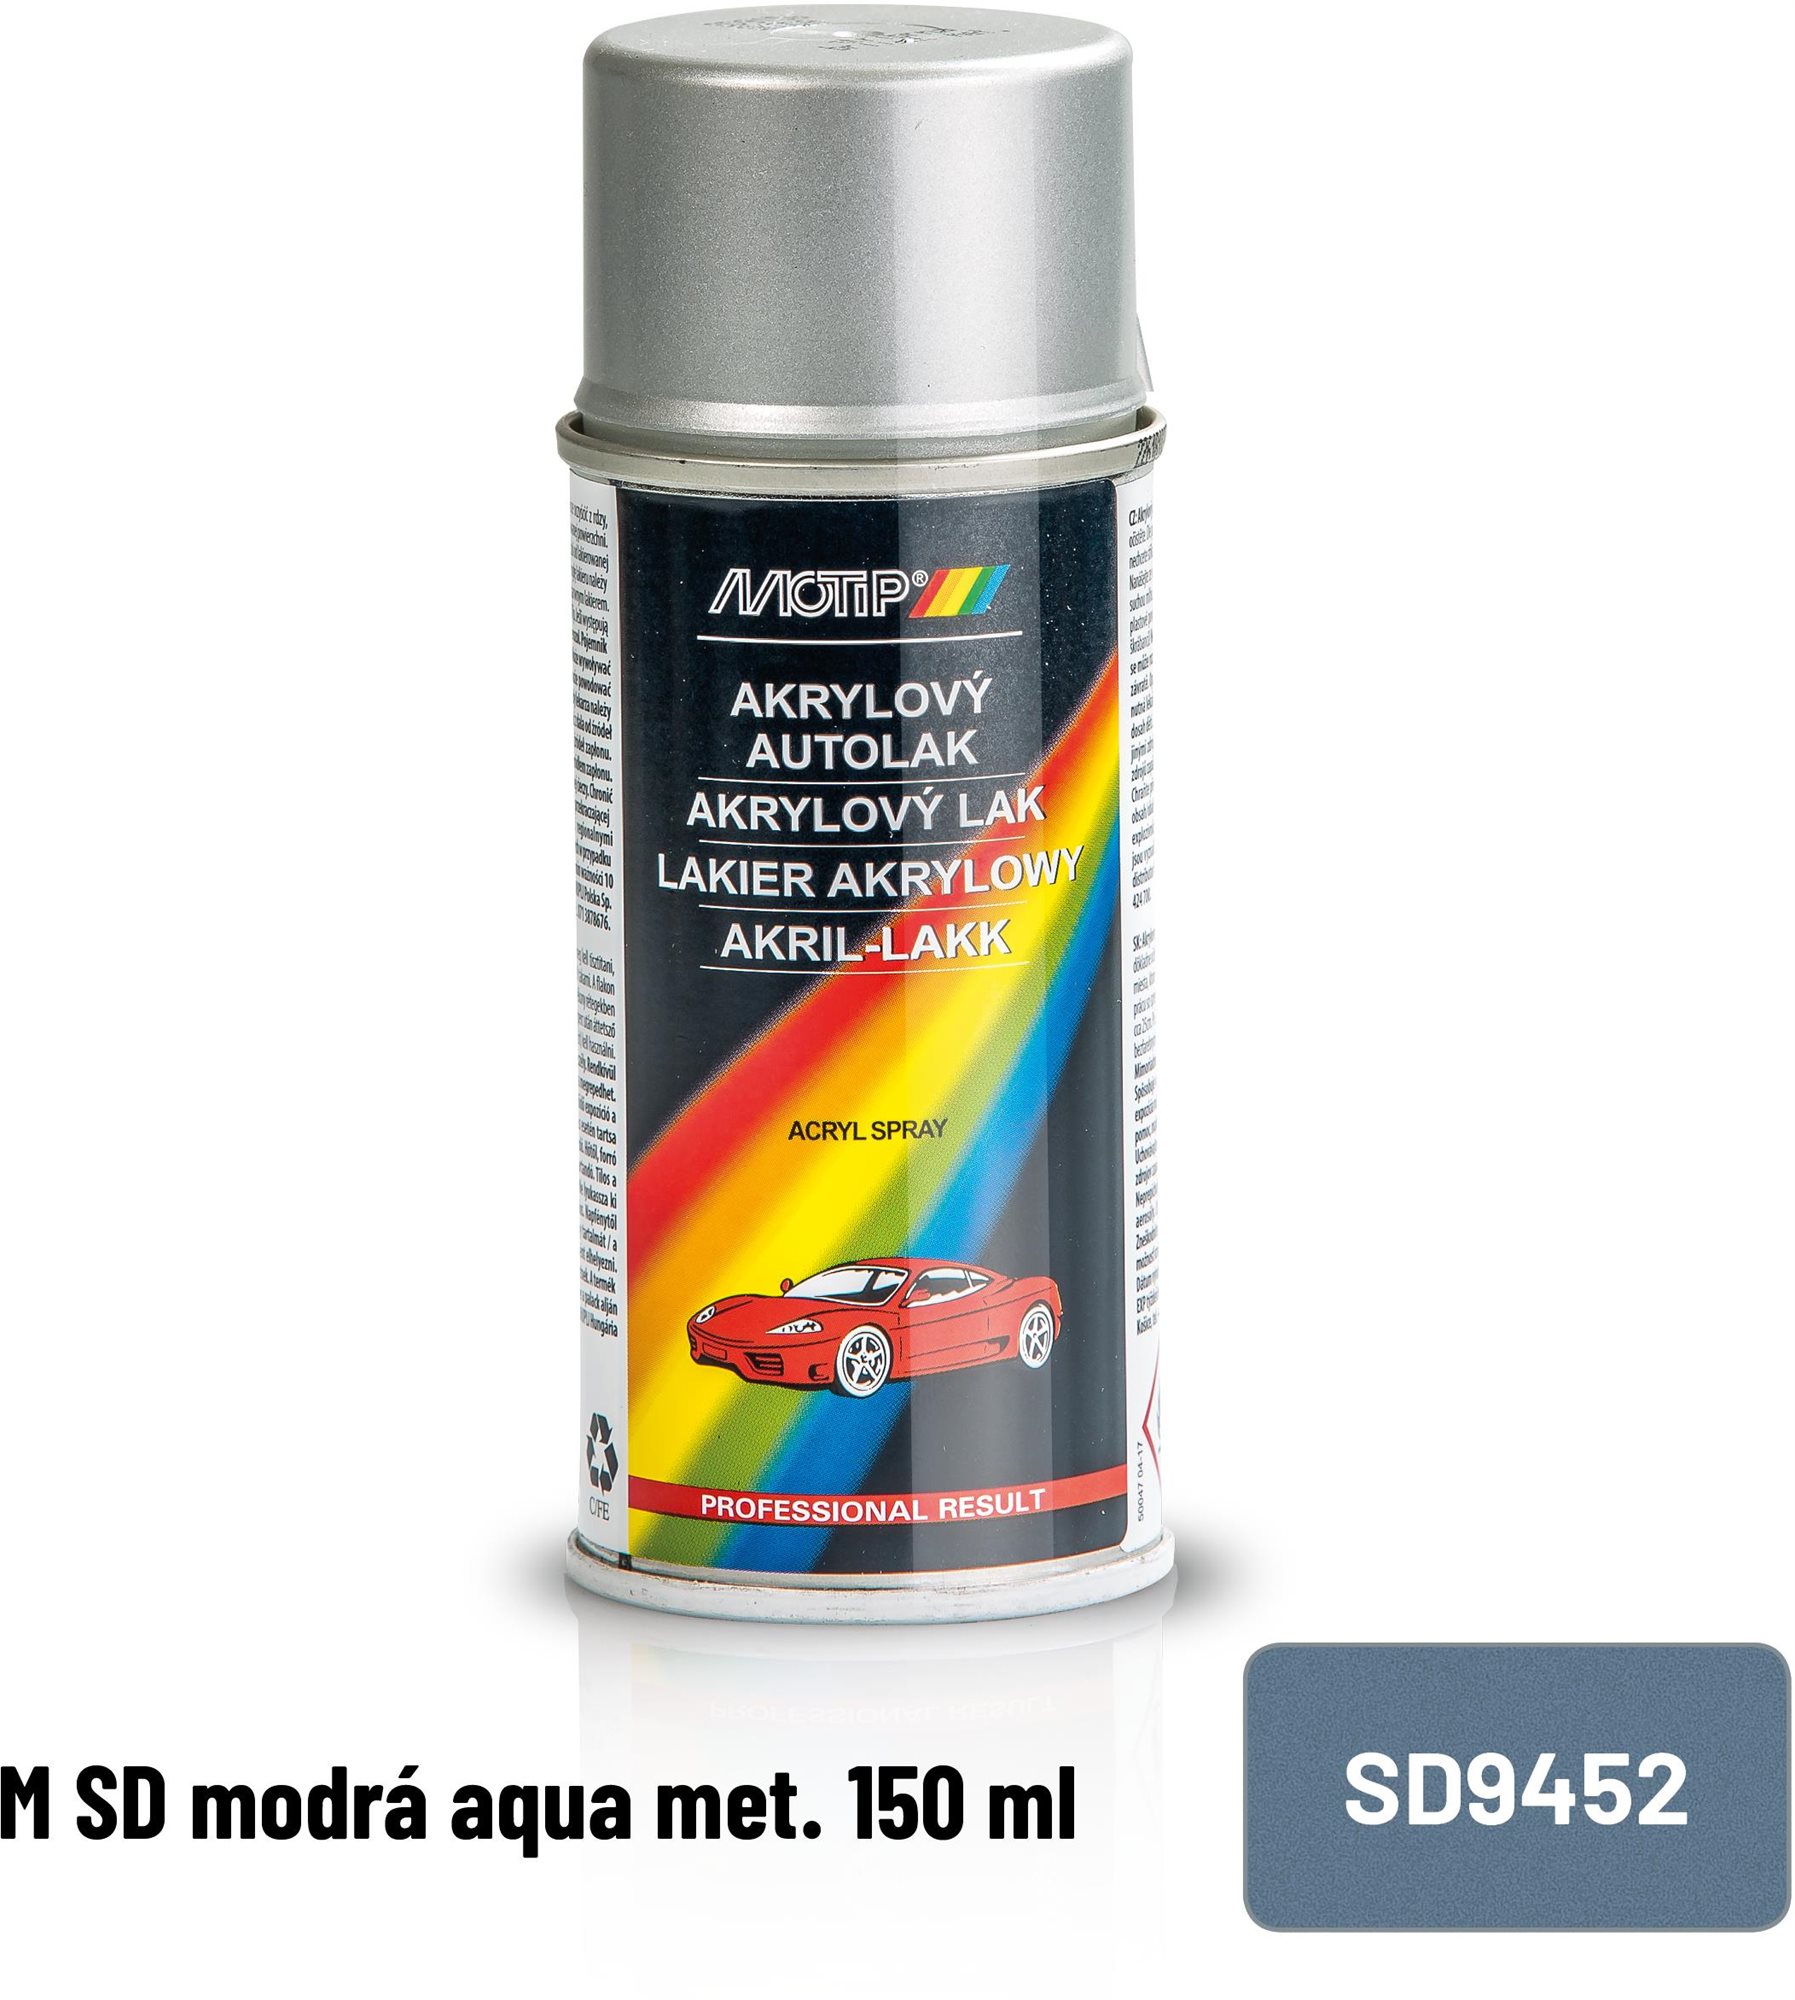 MOTIP M SD aqua met. 150 ml